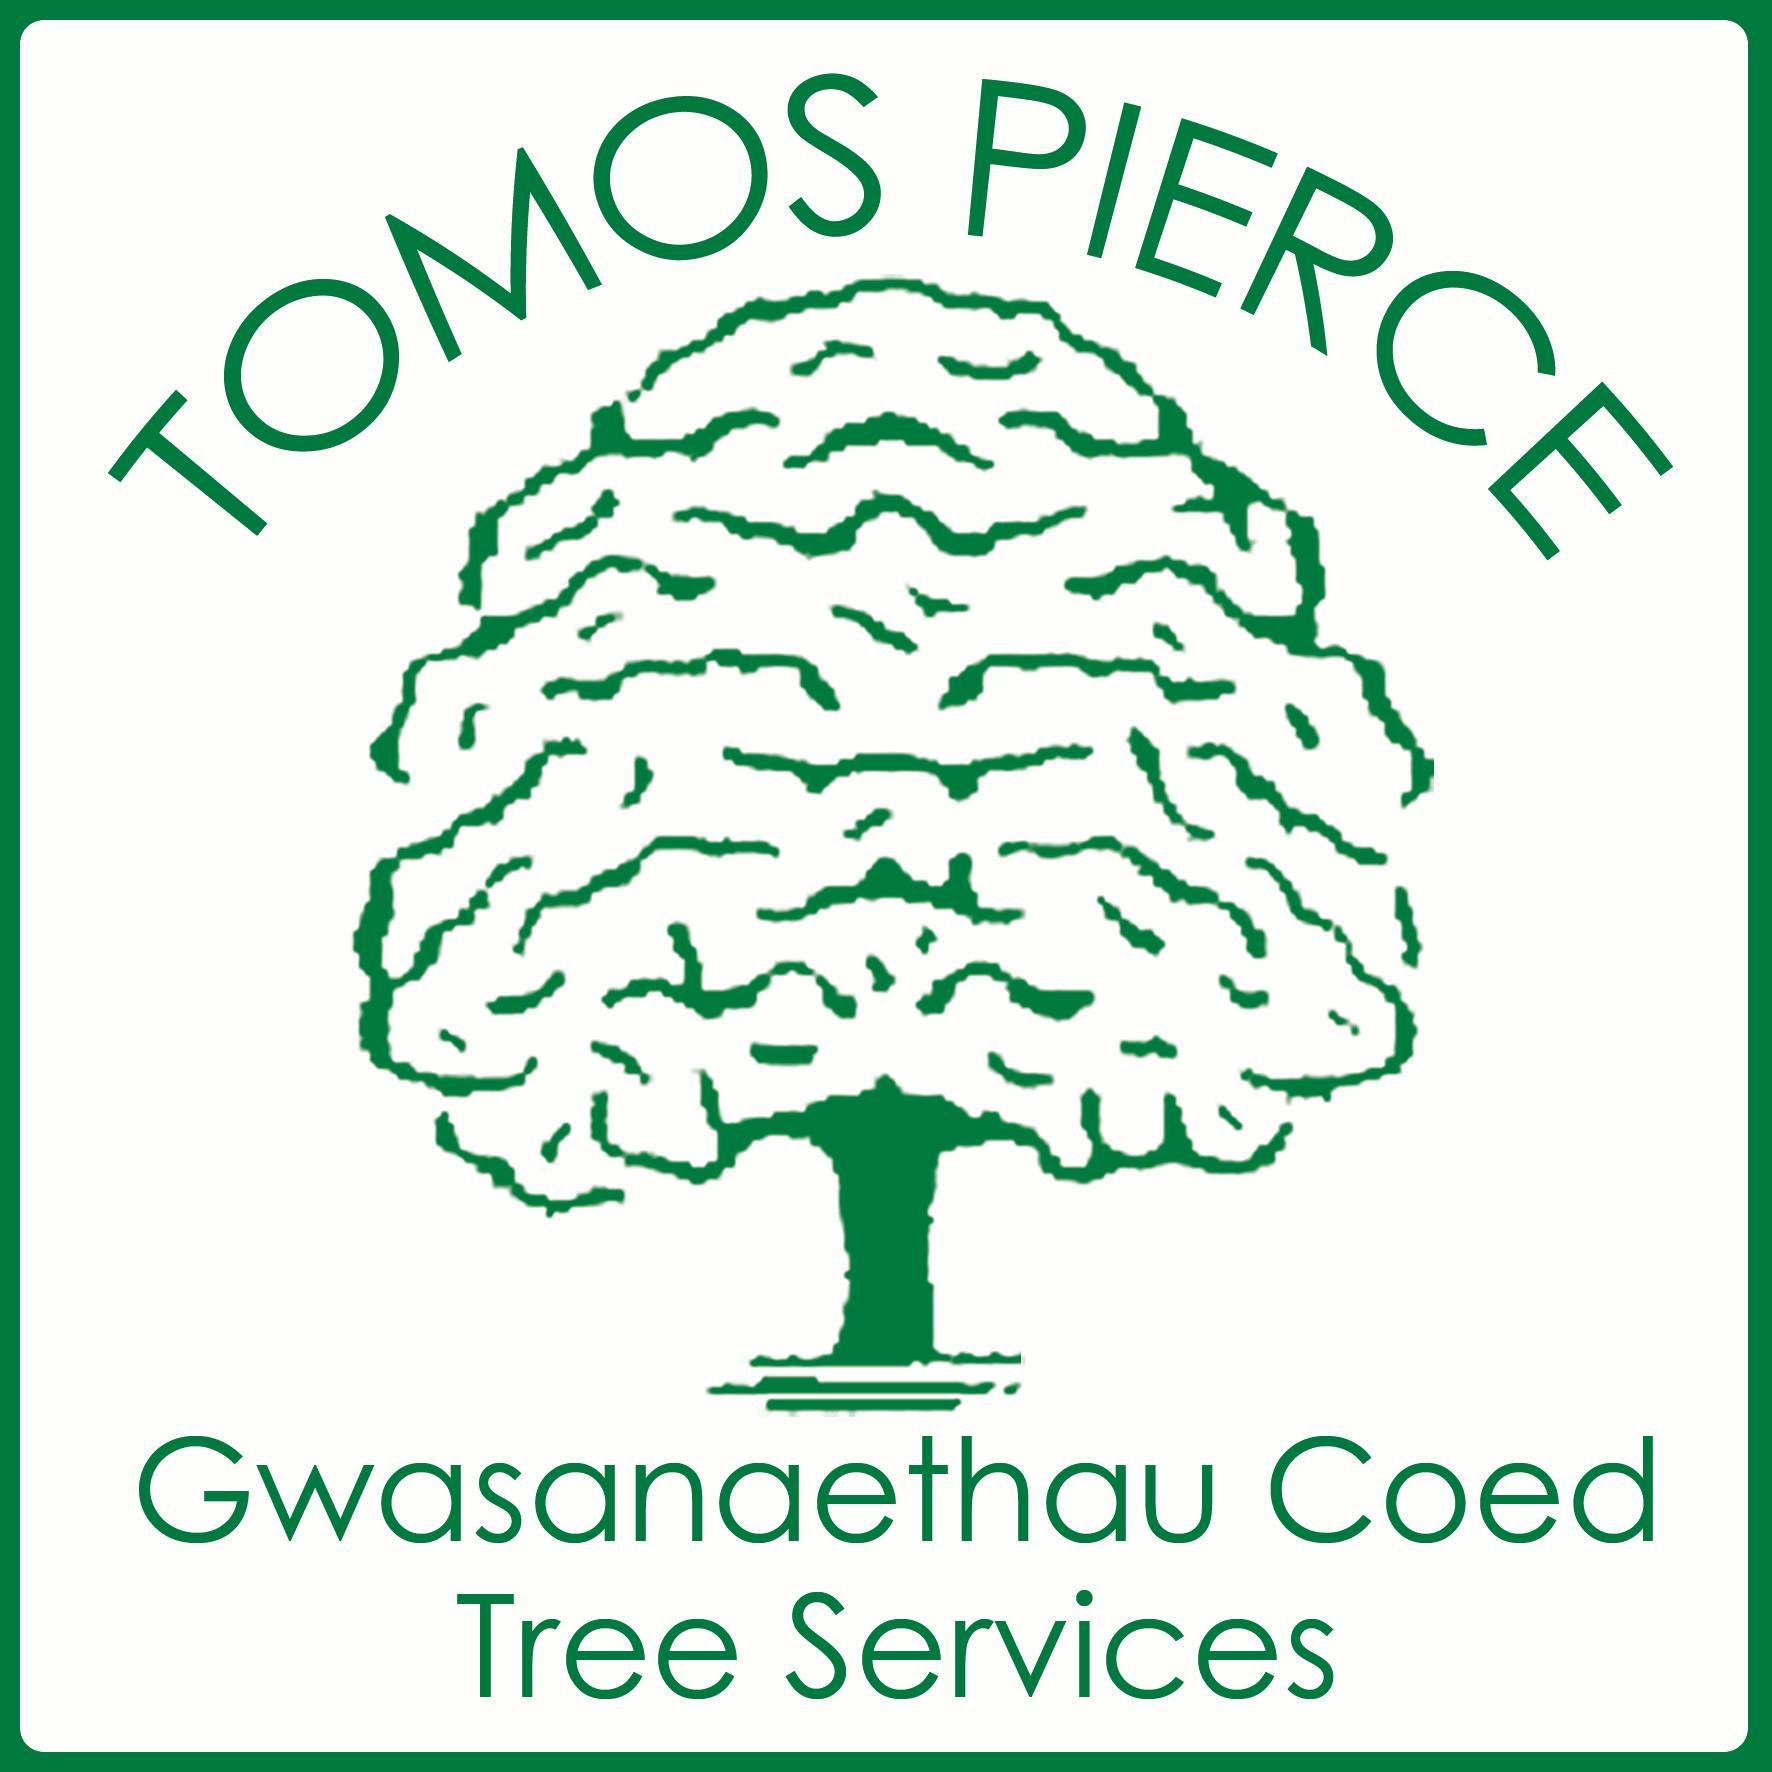 Gwasanaethau Coed Tomos Pierce Tree Services - Bangor, Gwynedd LL57 4DY - 07884 413963 | ShowMeLocal.com